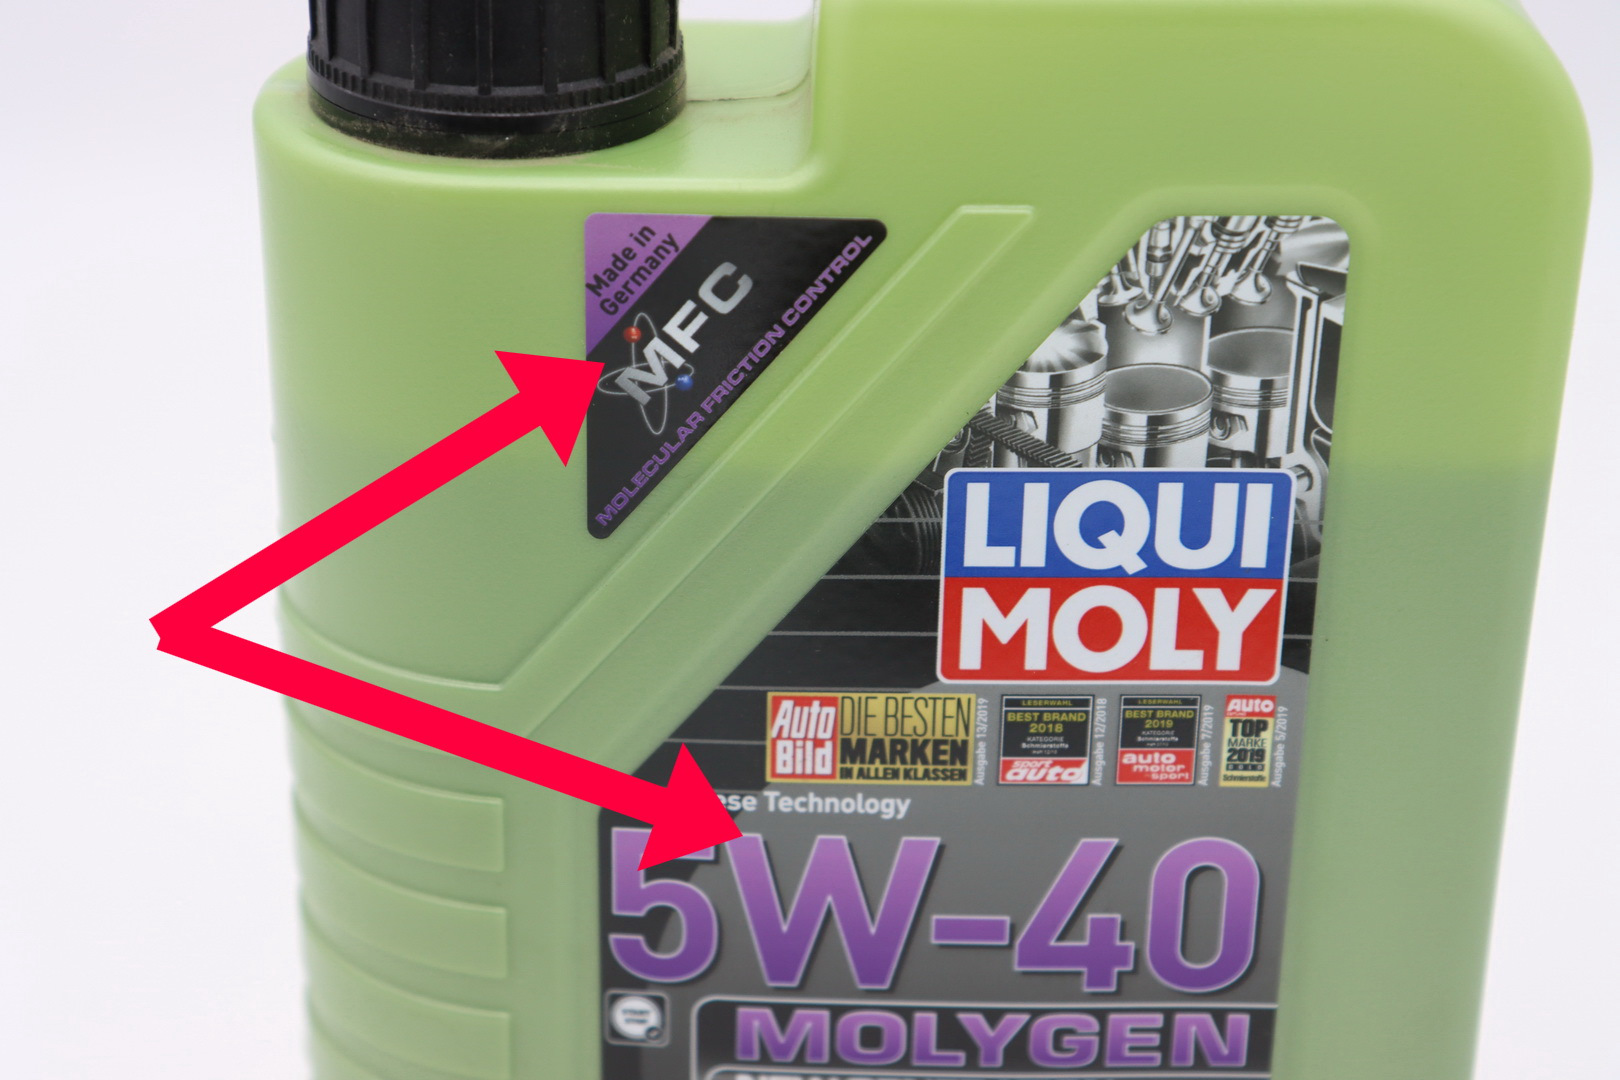 Как проверить масло ликви моли. Molygen New Generation 5w-40. Масло моторное Liqui Moly 10w-40 Molygen. Ликви Молли 5 40 молиген. Масло Liqui Moly 5w40 Molygen.